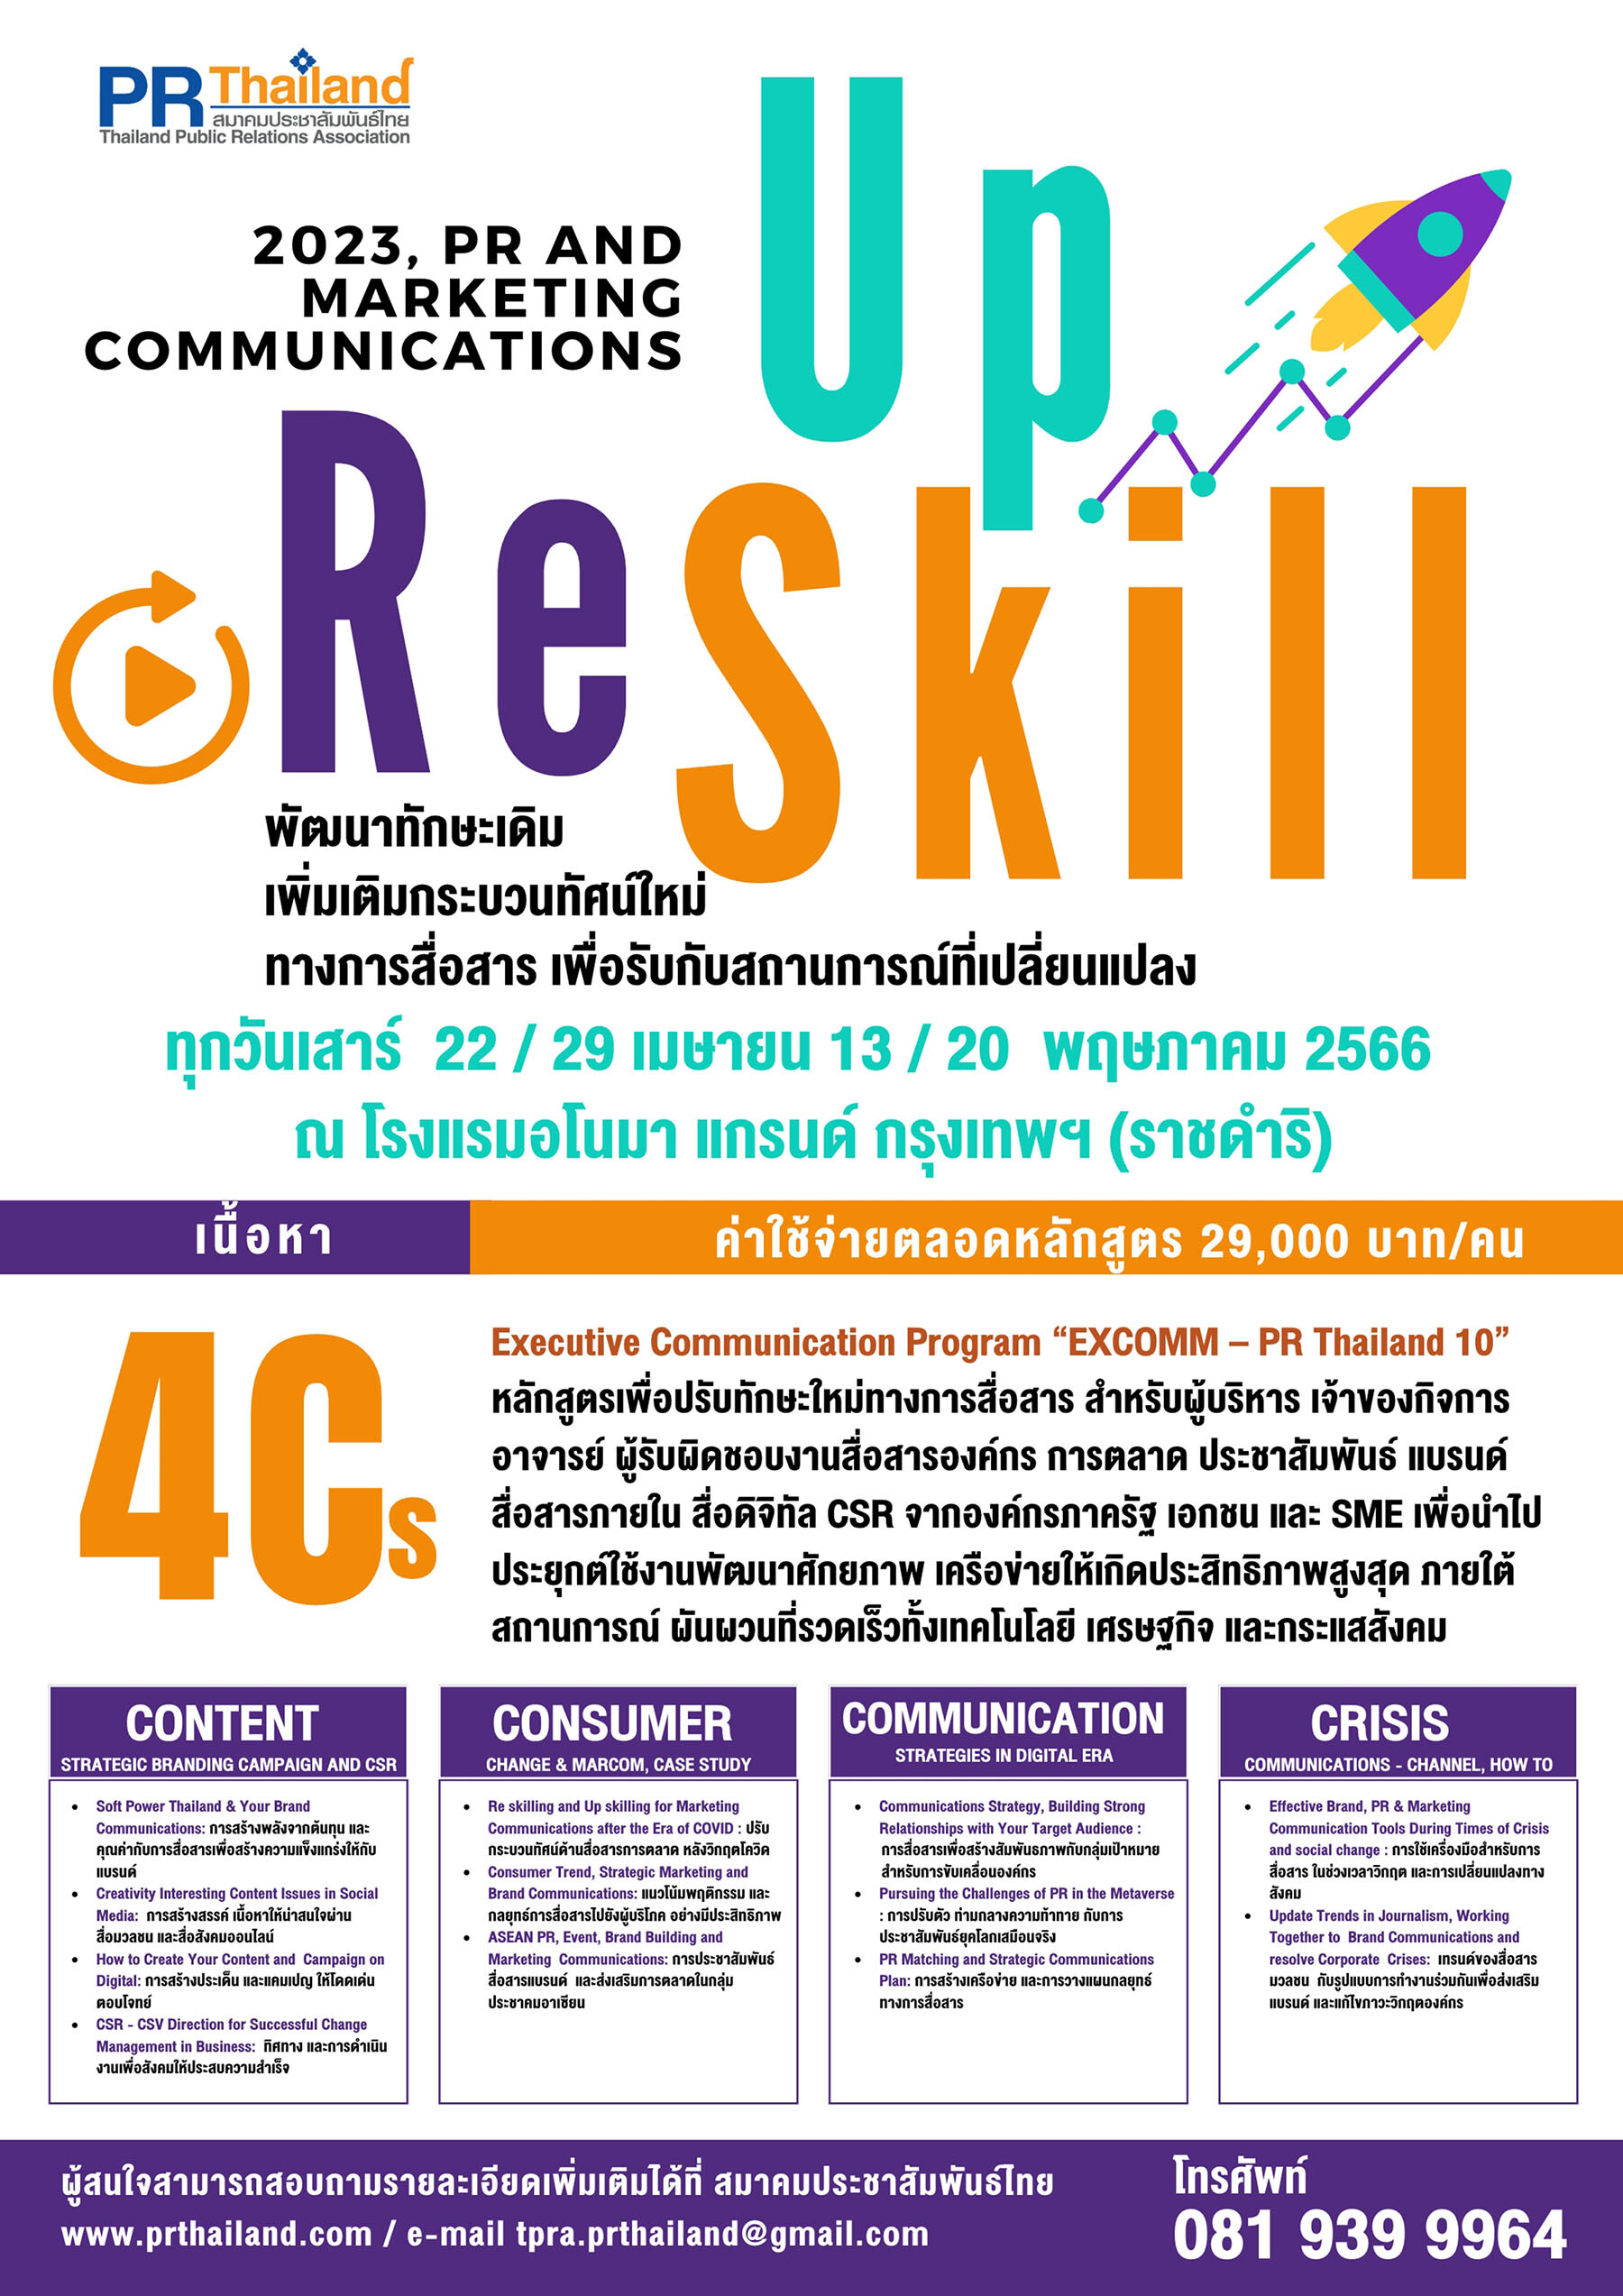 สมาคมประชาสัมพันธ์ไทย เปิดหลักสูตรอบรมล่าสุด Up-skill &amp; Re-skill ด้าน PR แบรนด์ และสื่อสารการตลาด ติวเข้มเน้นใช้งานจริง และขยายเครือข่าย PR Matching